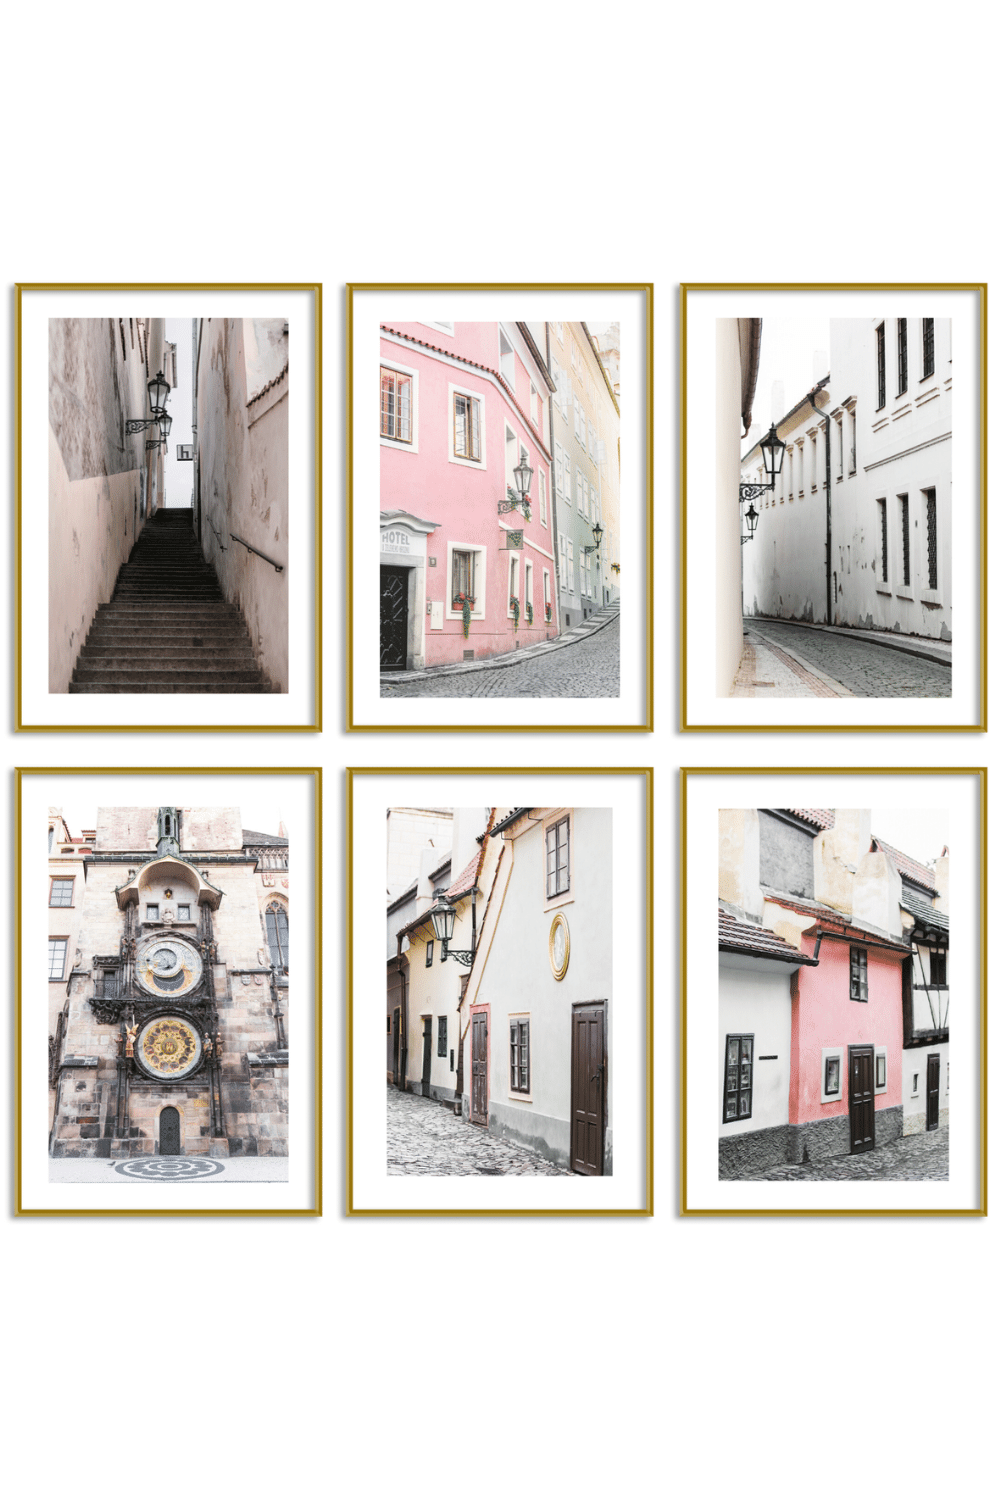 Gallery Wall Set of 6 - Art Print Set of 6 - Prague in Pink